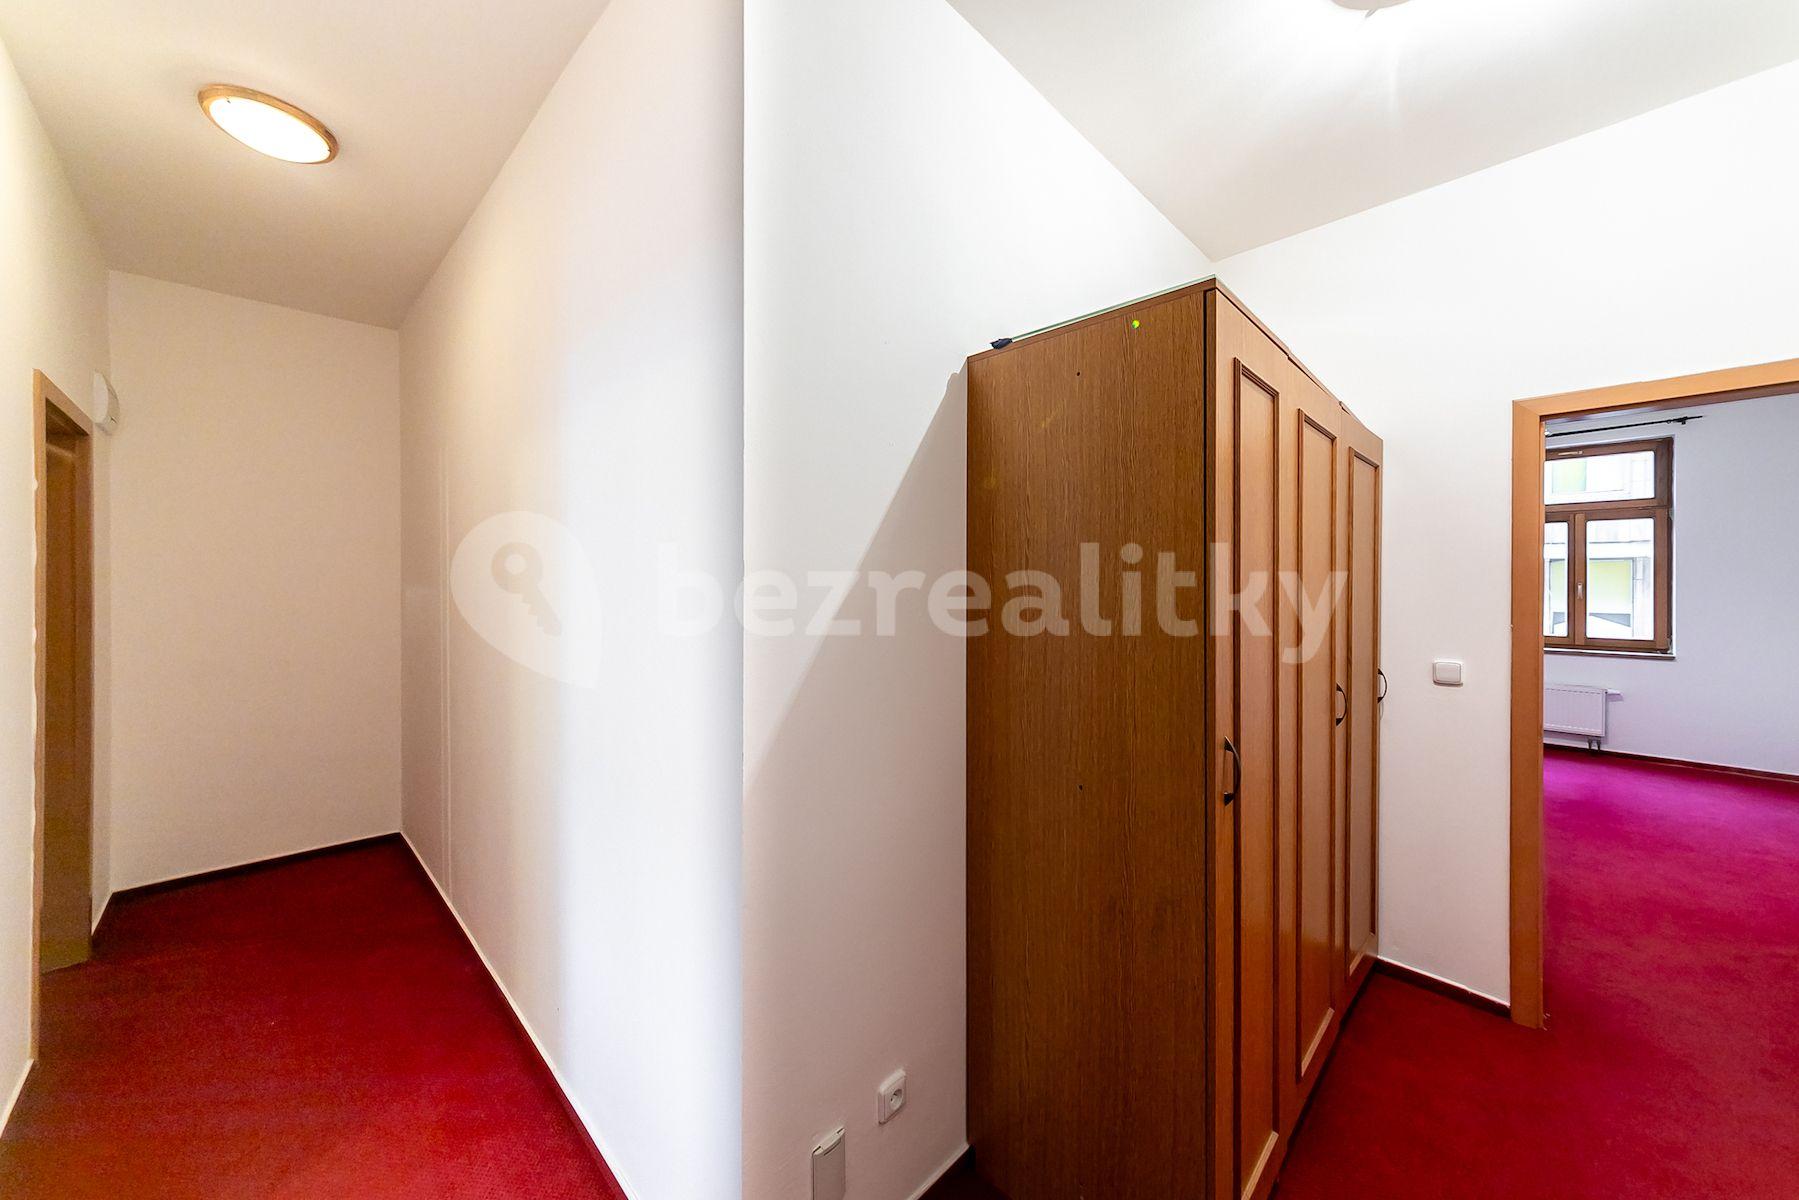 1 bedroom with open-plan kitchen flat for sale, 54 m², Fibichova, Mělník, Středočeský Region